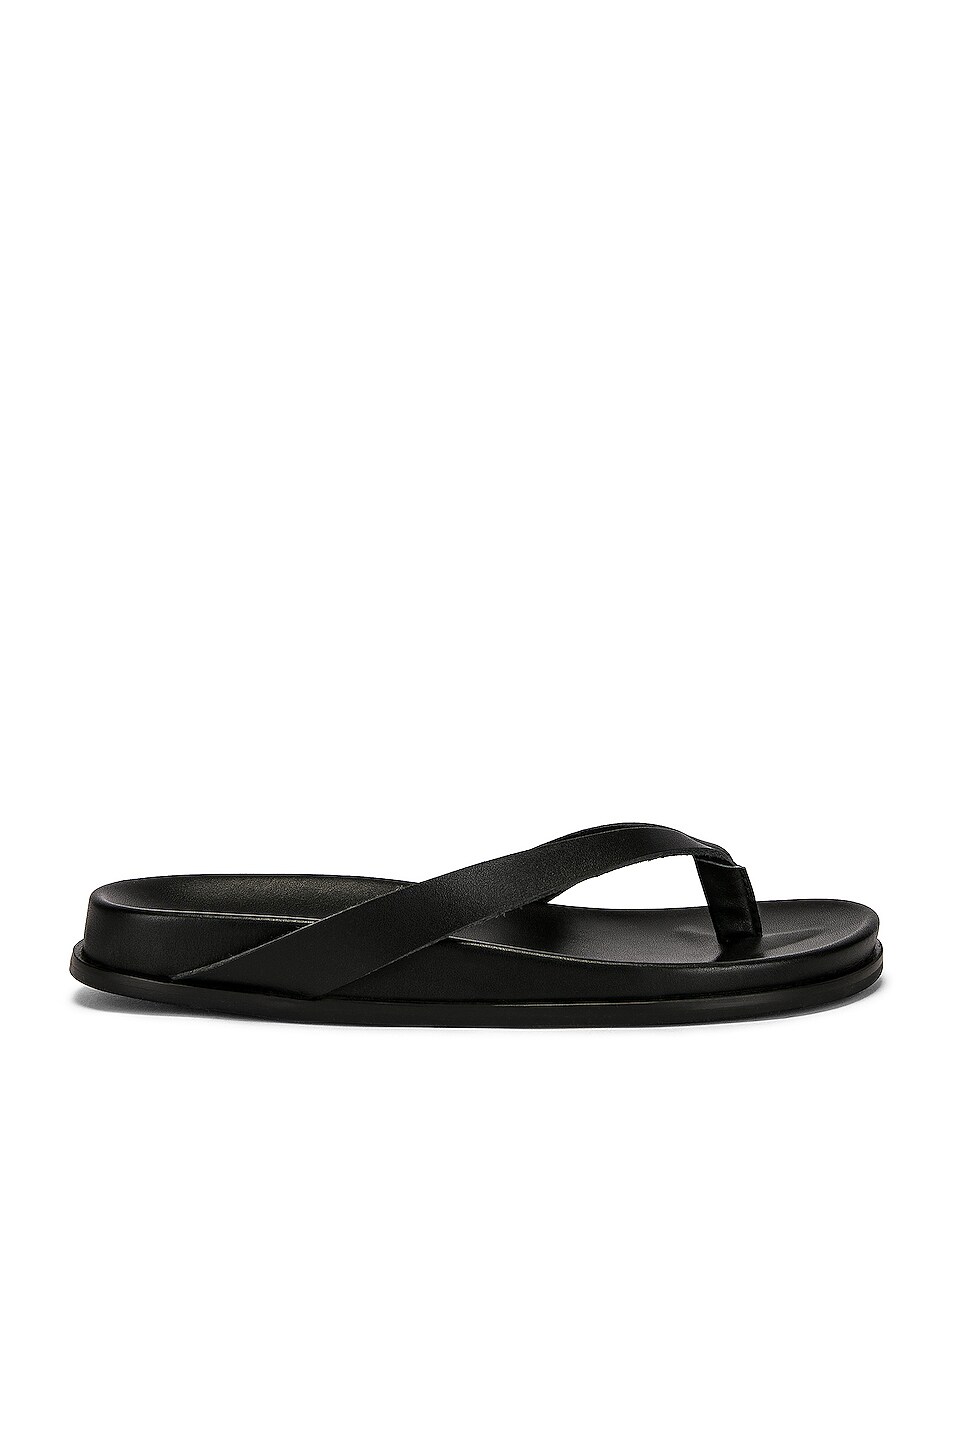 Image 1 of St. Agni Flip Flop Sandal in Black